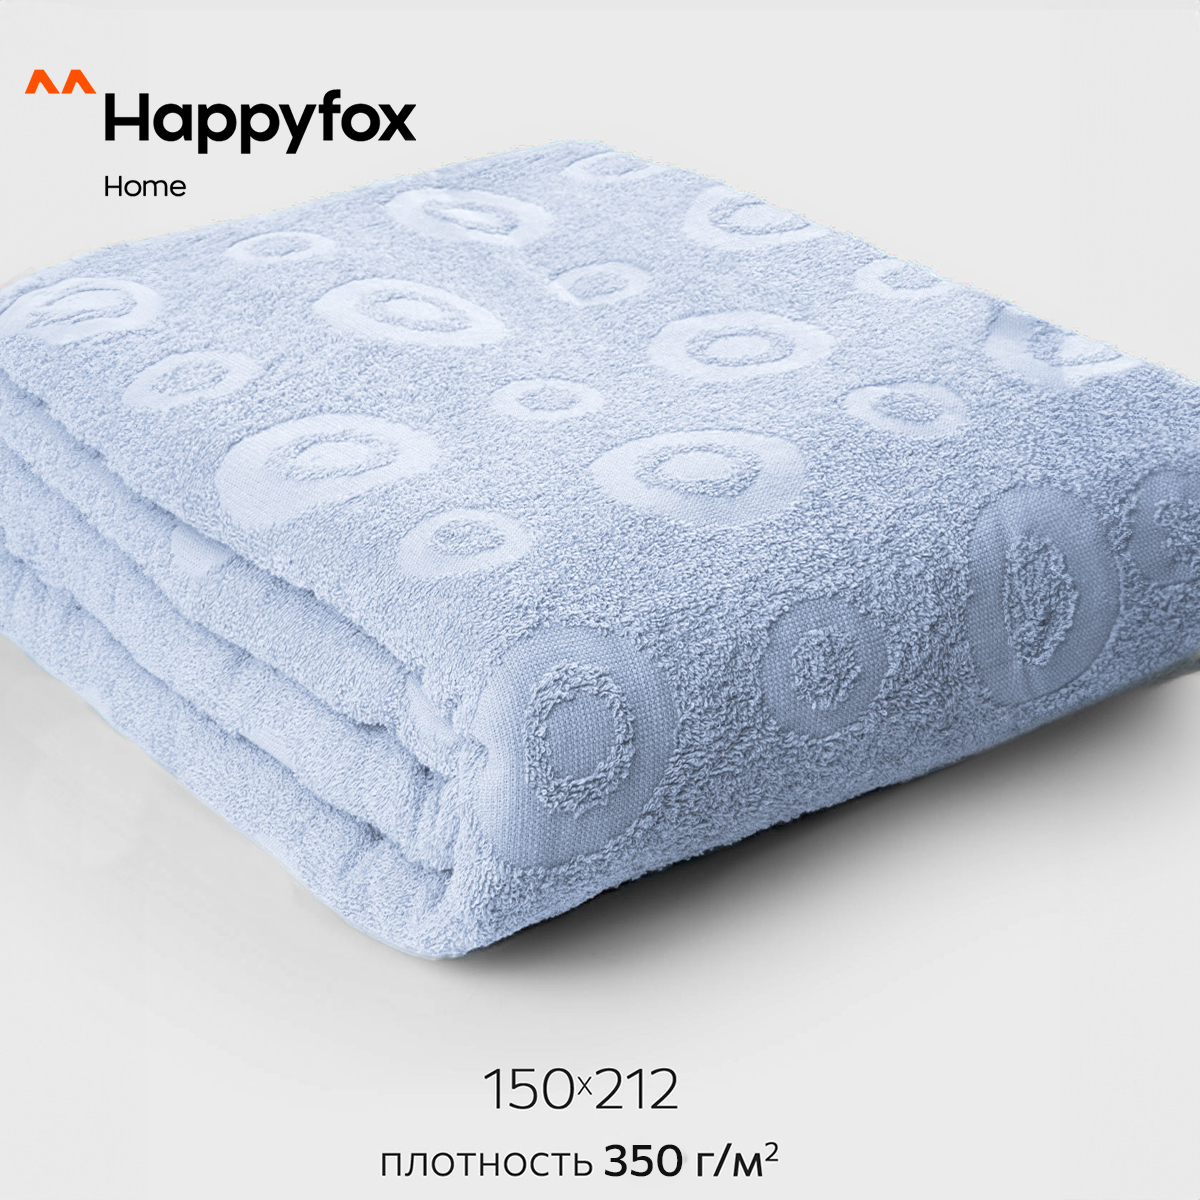 Простыня Happy Fox Home HF1502121015350 бледно васильковый 150X212